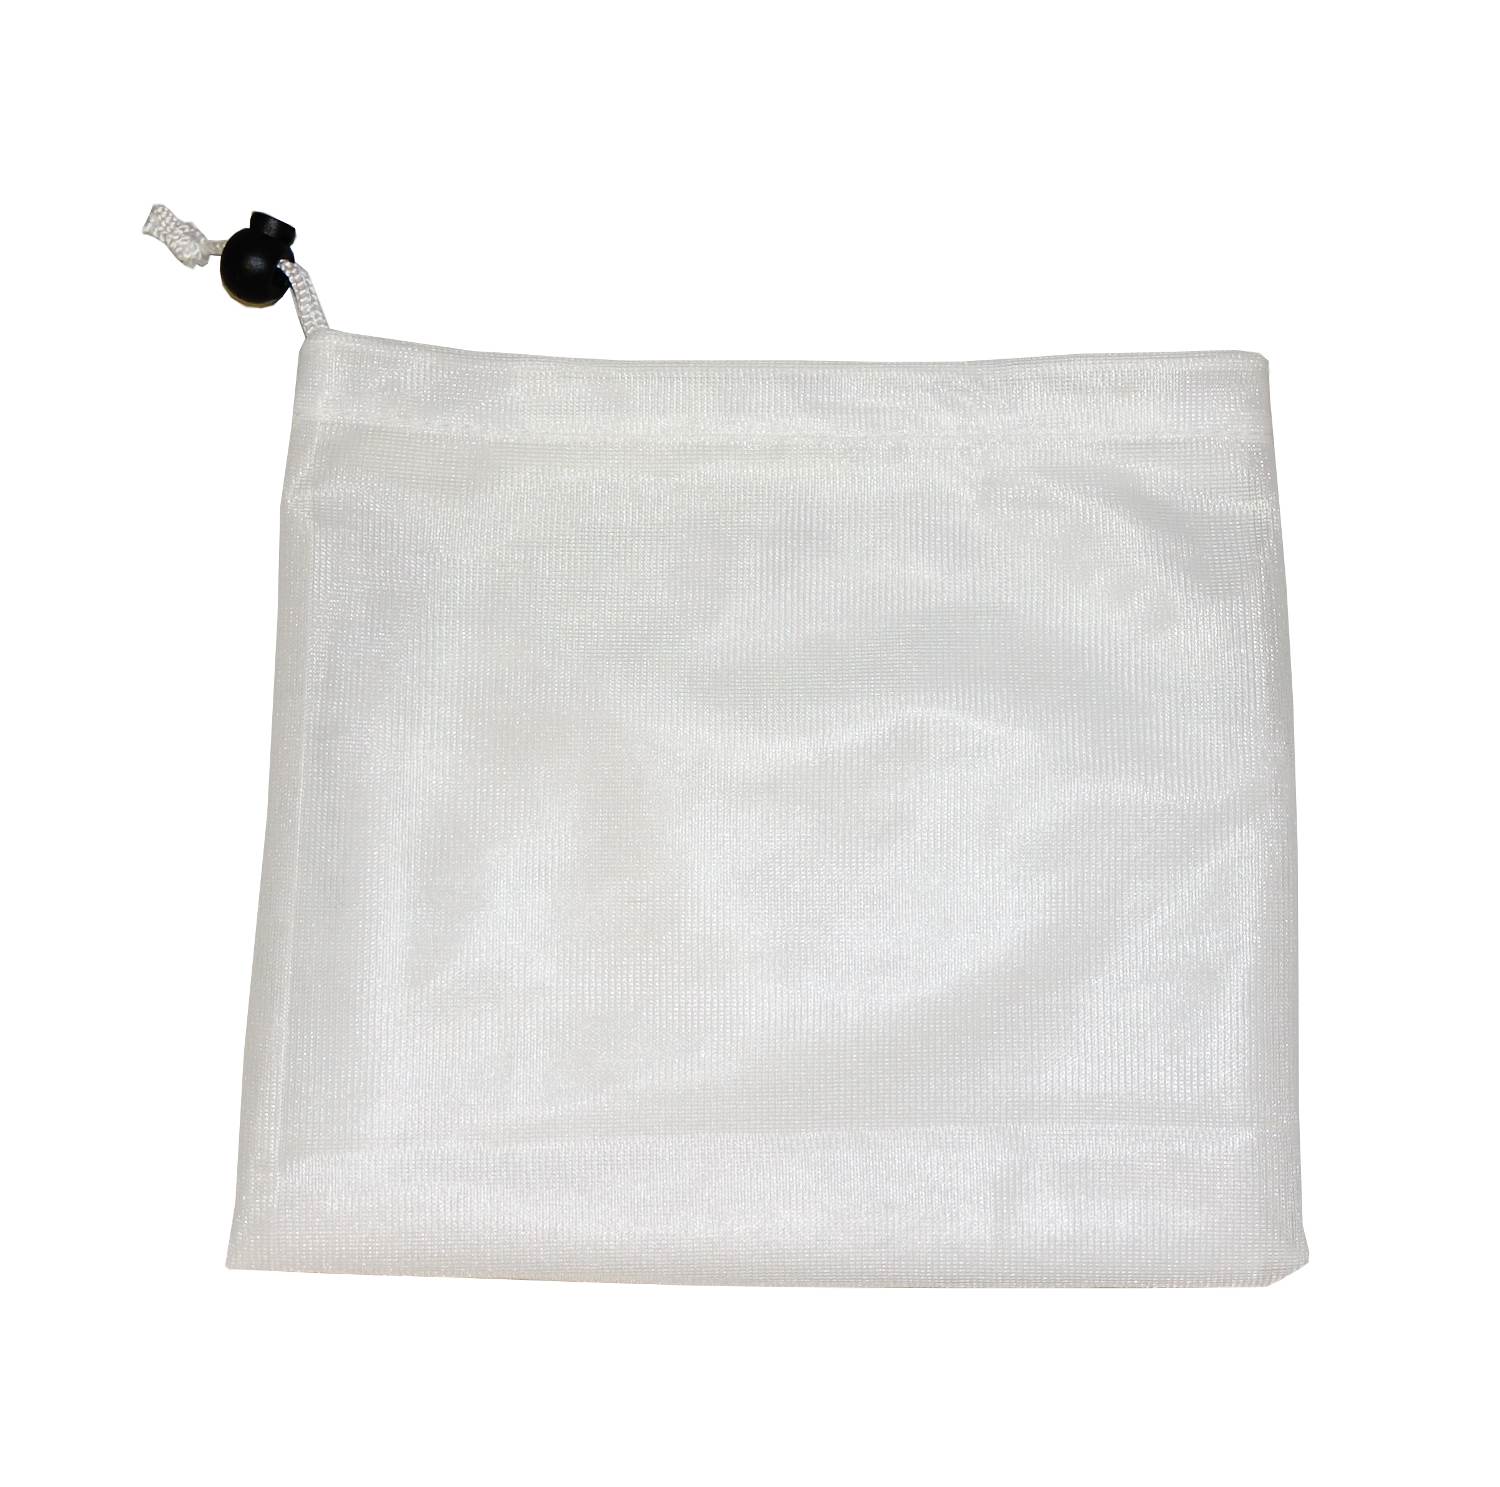 avo+cado mesh laundry bag for nappy buckets